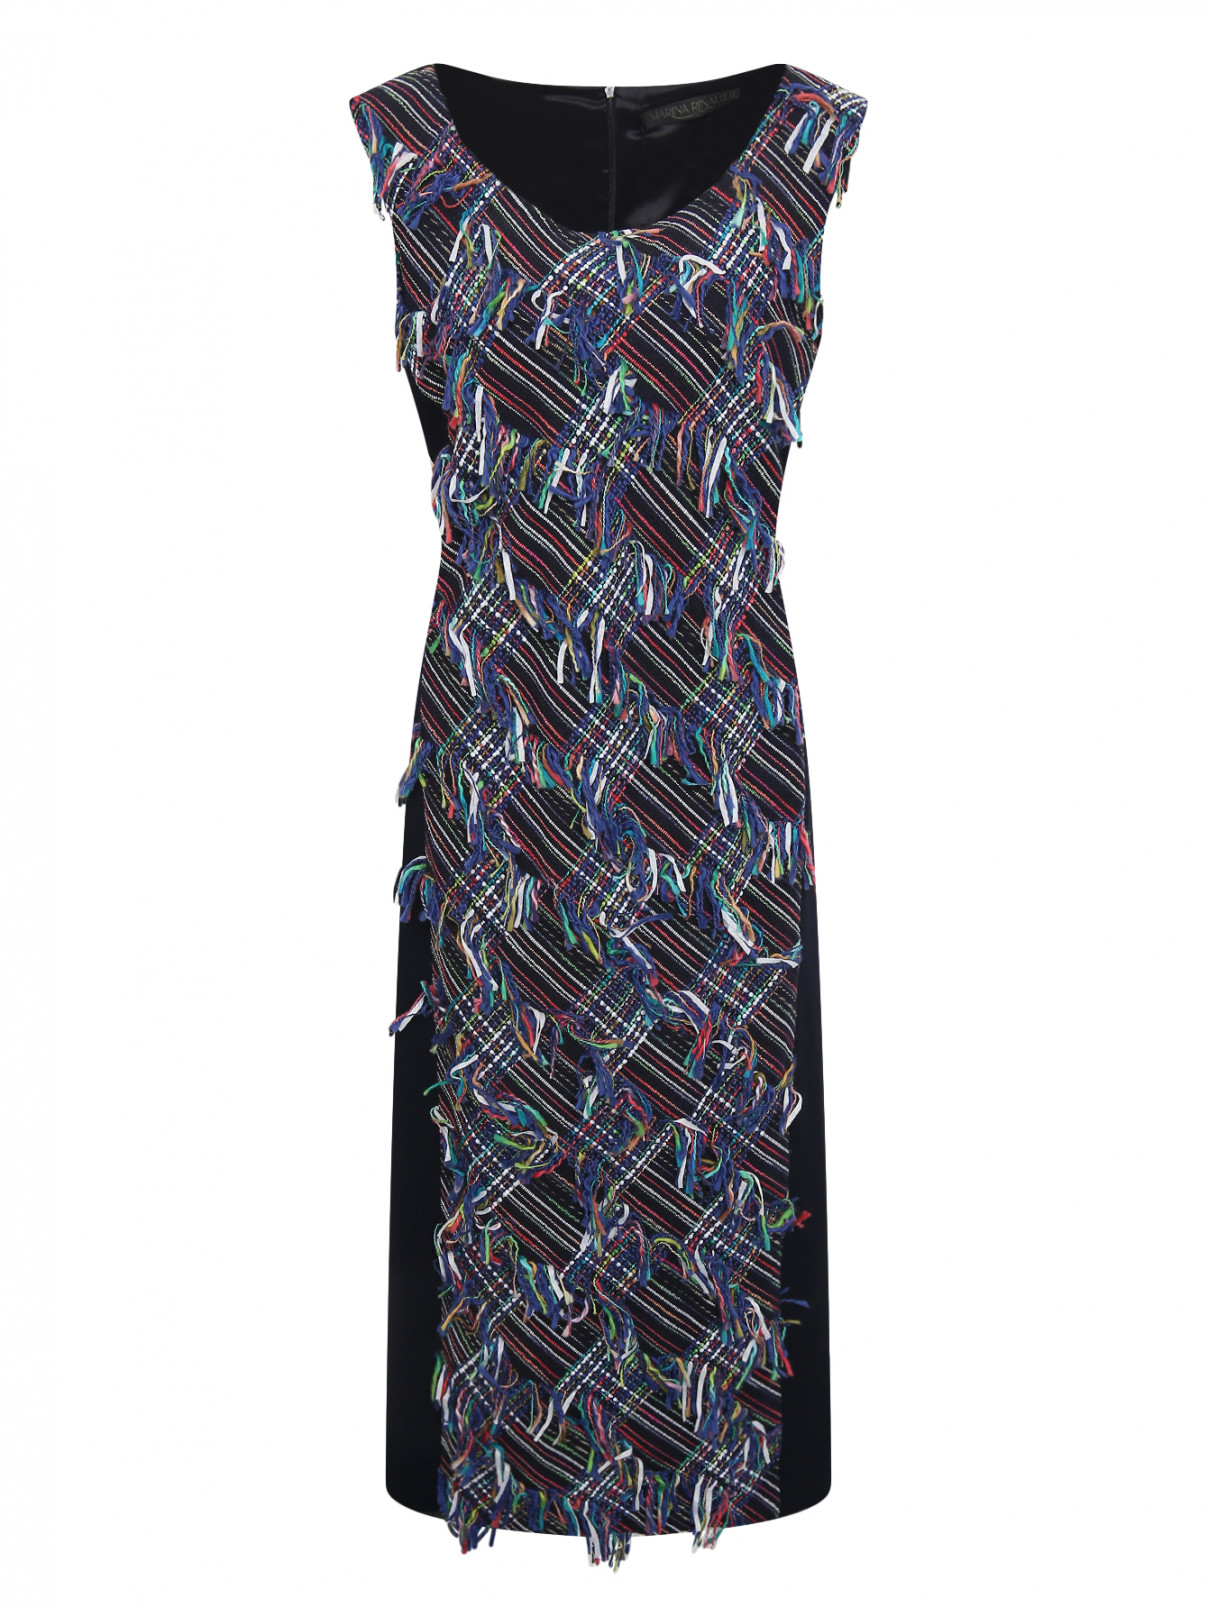 Платье-футляр из хлопка с узором Marina Rinaldi  –  Общий вид  – Цвет:  Синий